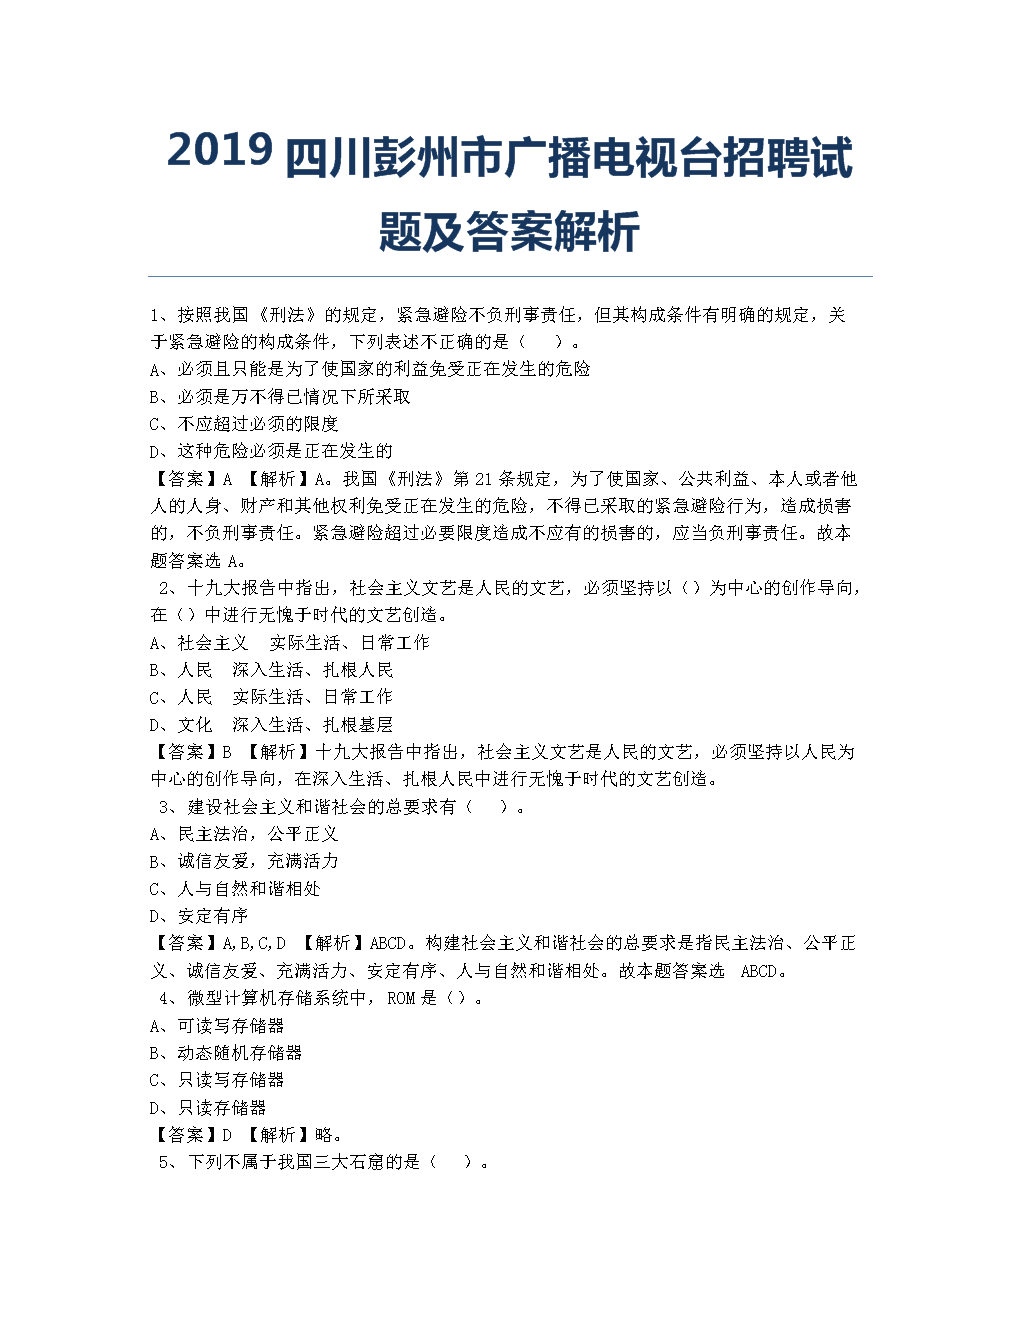 四川广播电视台官网招聘信息配图